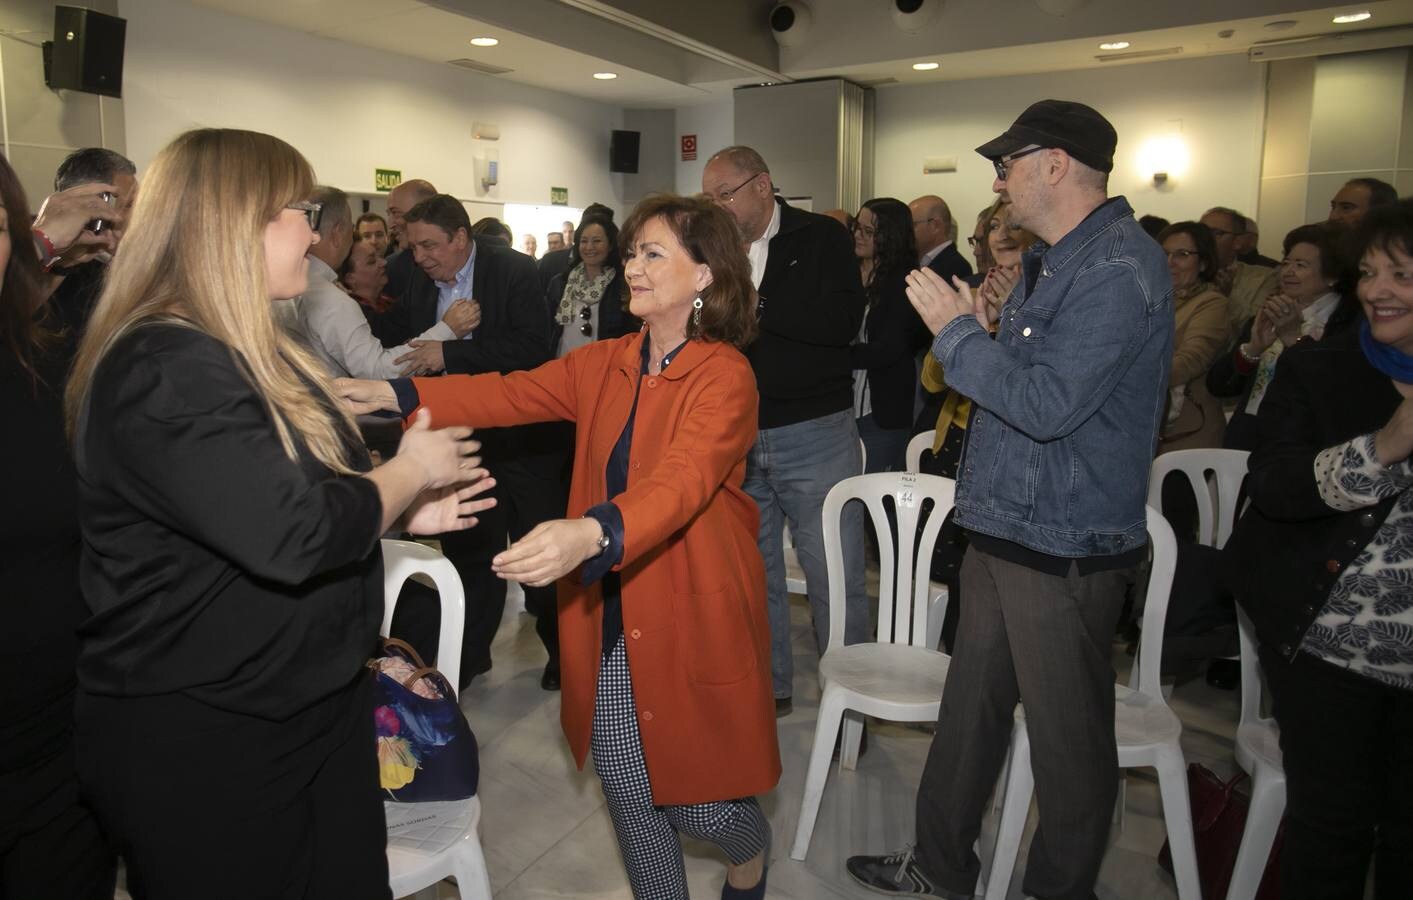 El mitin de Carmen Calvo y Luis Planas en Córdoba, en imágenes